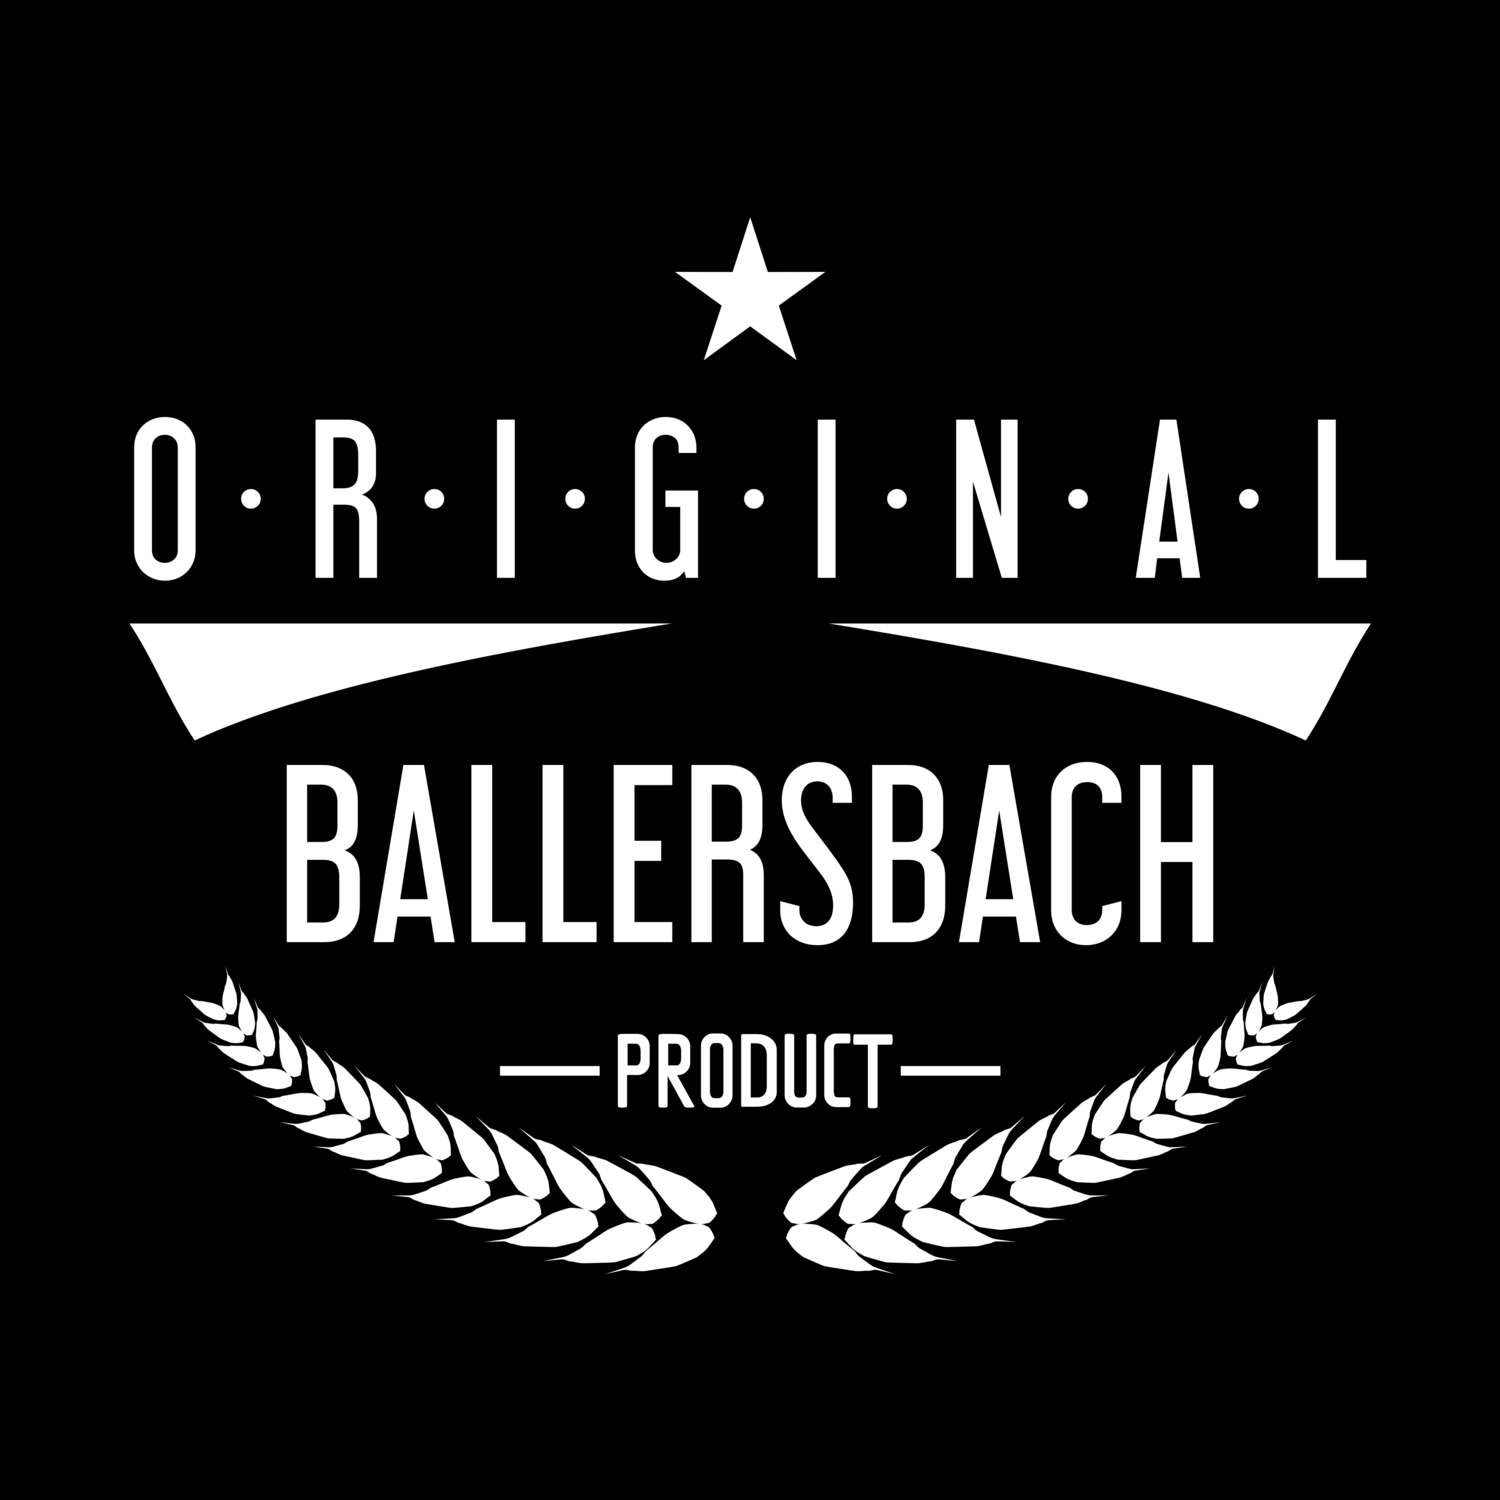 Ballersbach T-Shirt »Original Product«